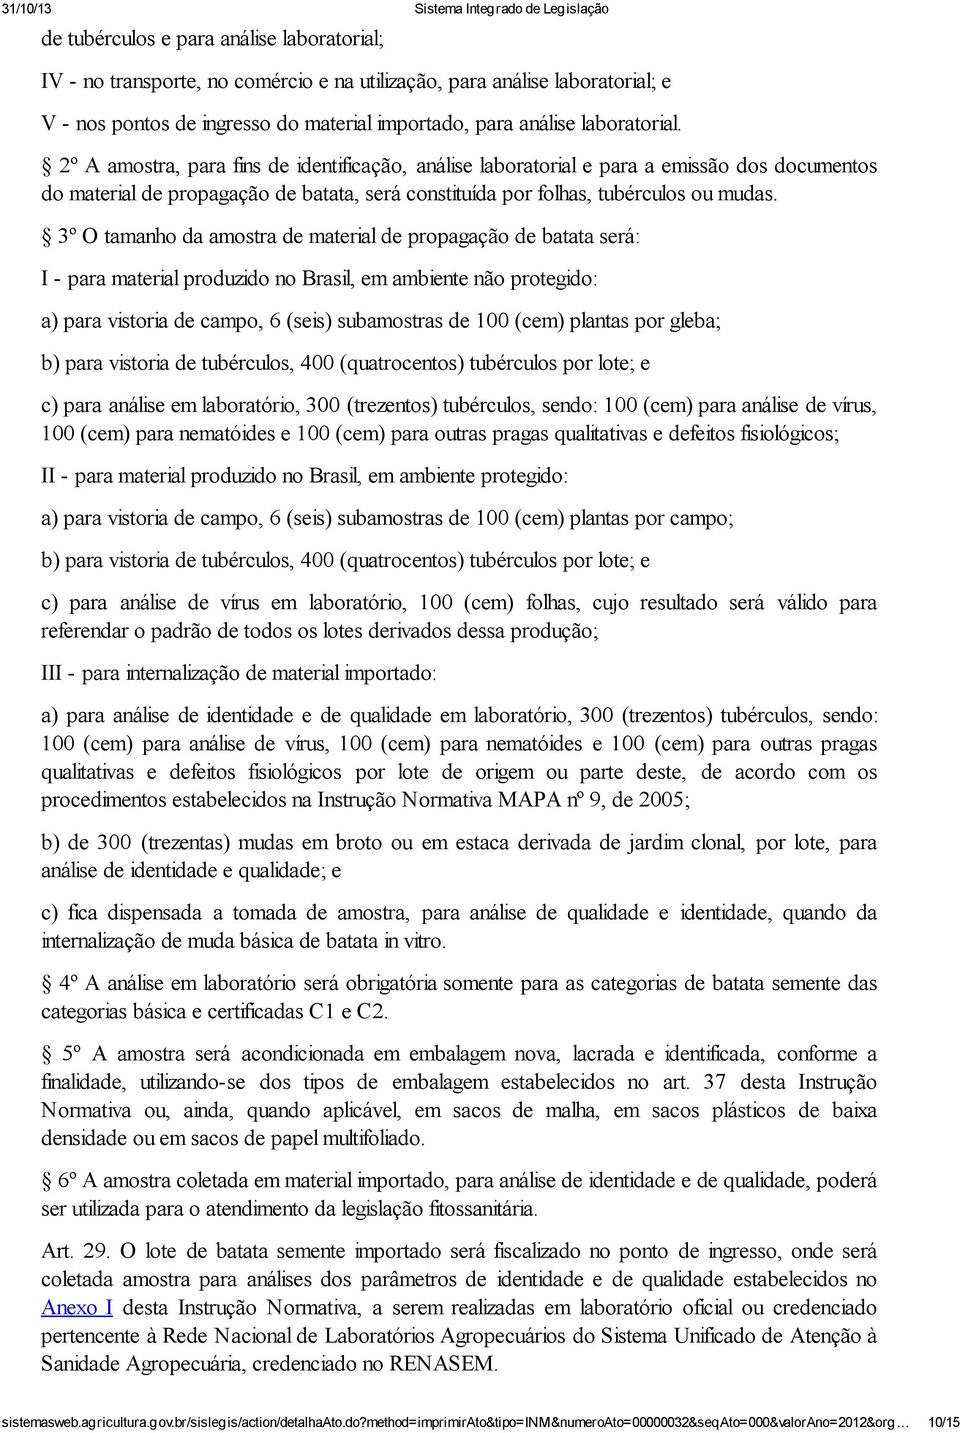 3º O tamanho da amostra de material de propagação de batata será: I - para material produzido no Brasil, em ambiente não protegido: a) para vistoria de campo, 6 (seis) subamostras de 100 (cem)